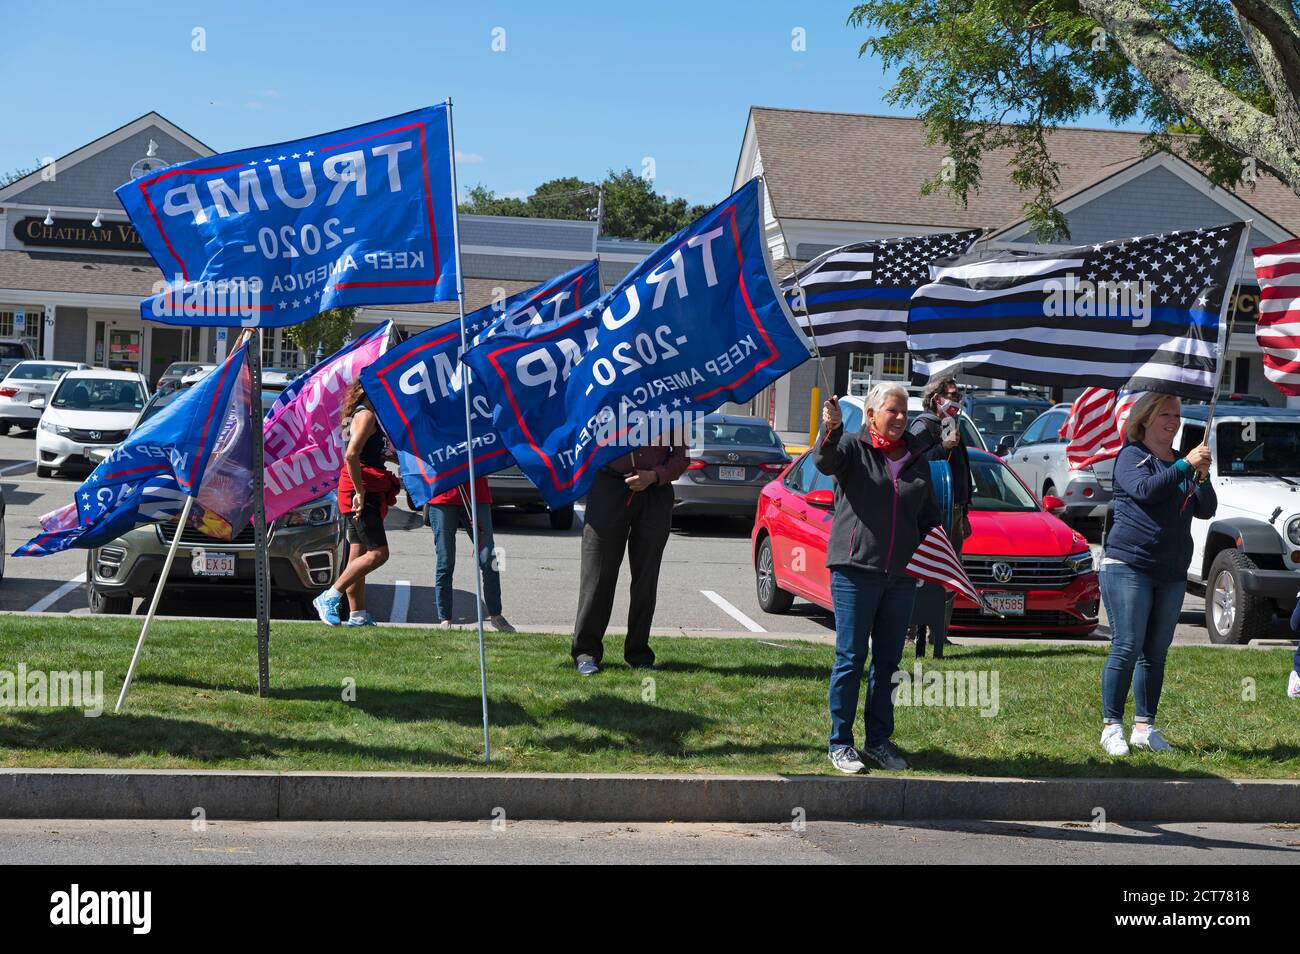 Rallye routier pour la réélection de Donald Trump à la présidence des États-Unis. Chatham, Massachusetts, on Cape Cod, États-Unis Banque D'Images